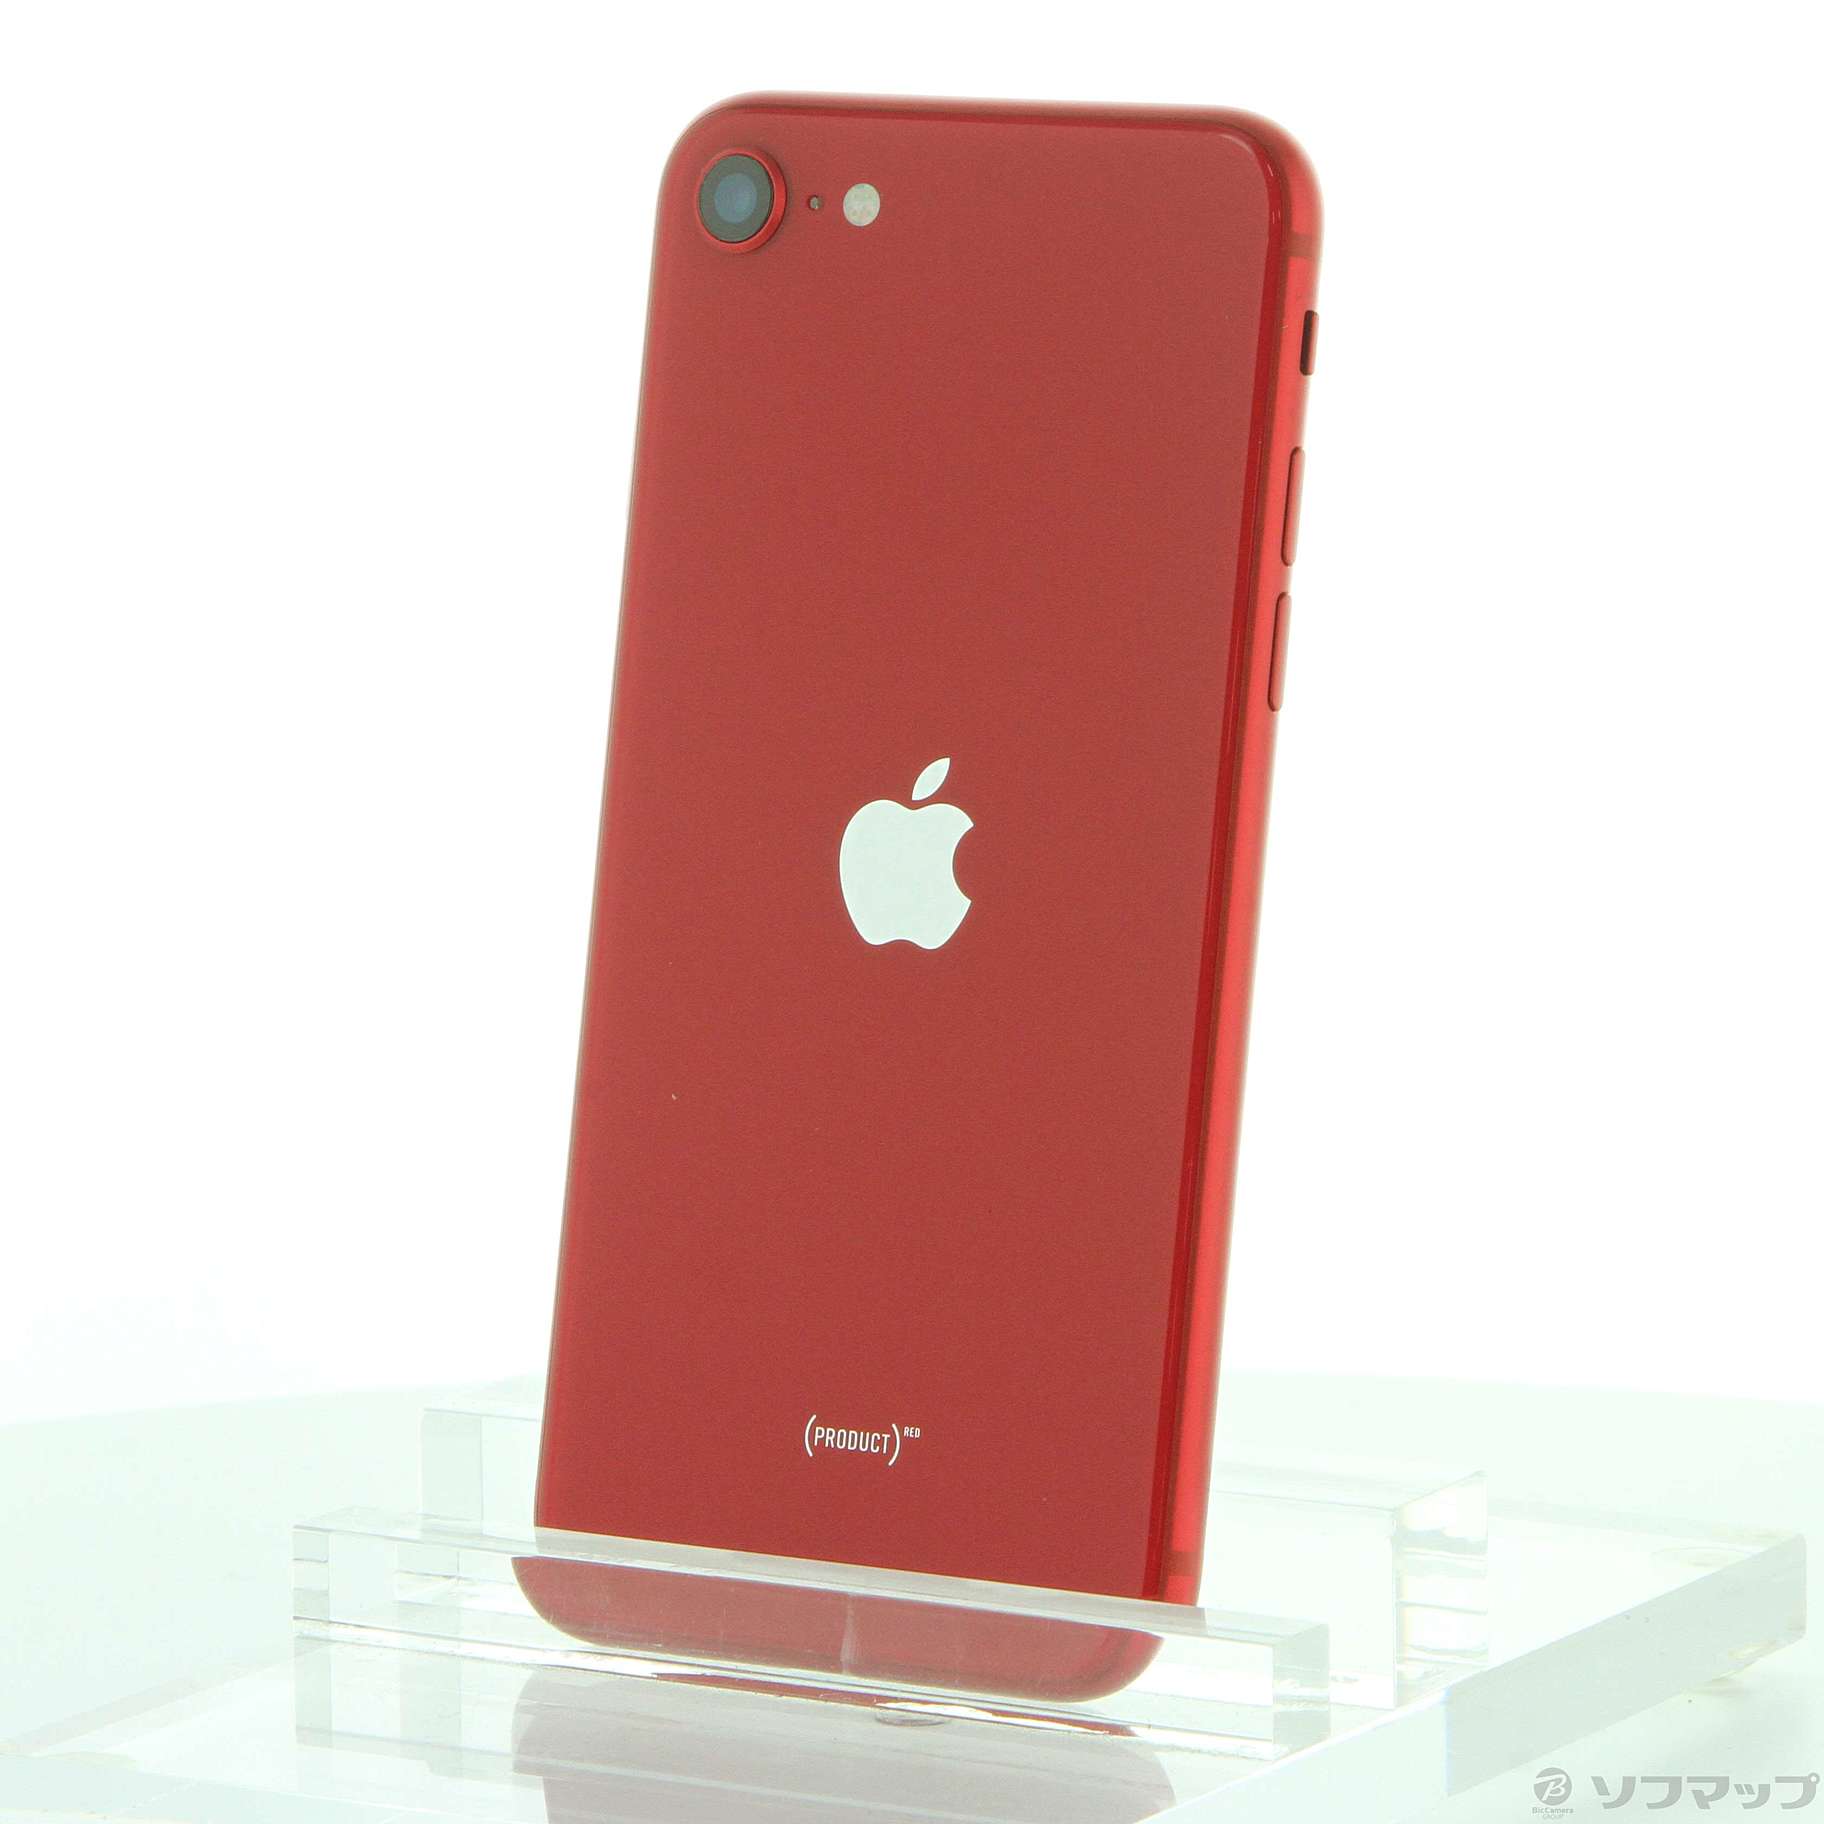 Apple iPhone SE 第3世代 64GB (PRODUCT)RED - スマートフォン本体